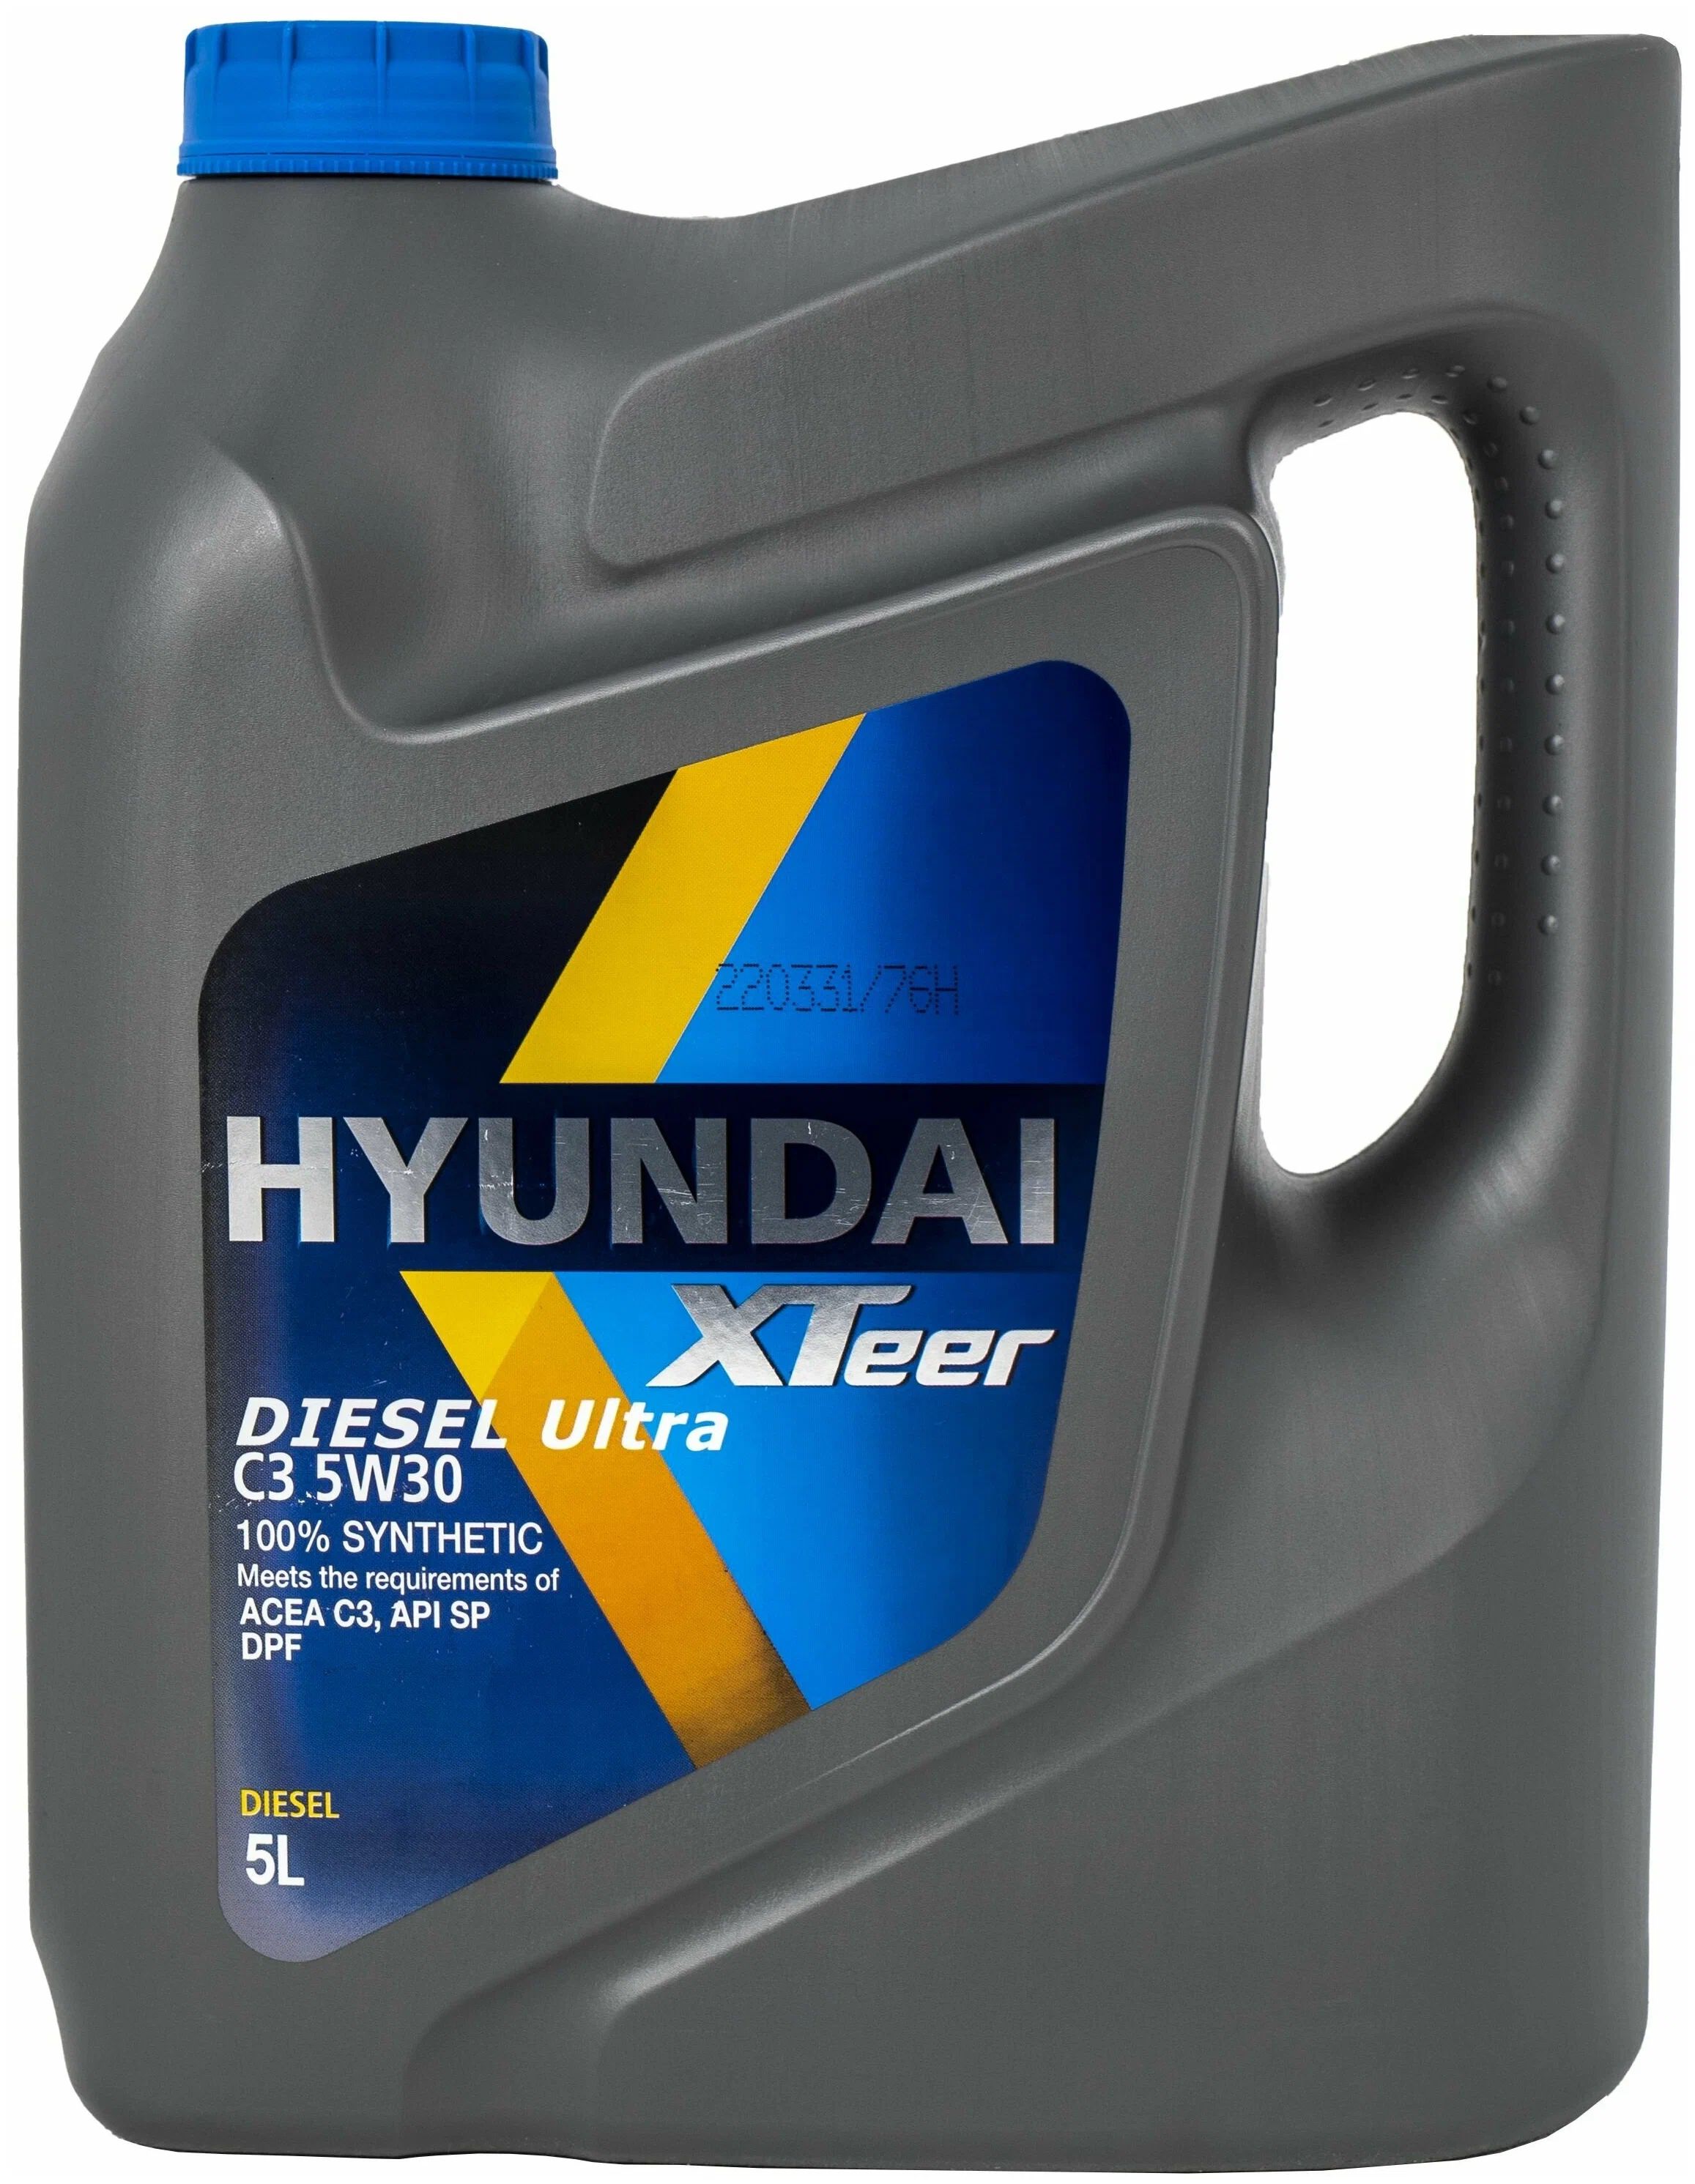 Hyundai XTEER Diesel Ultra c3 5w-30. XTEER Diesel Ultra c3 5w30. Hyundai XTEER Diesel Ultra 5w30. XTEER Diesel Ultra 5w30. Купить hyundai xteer